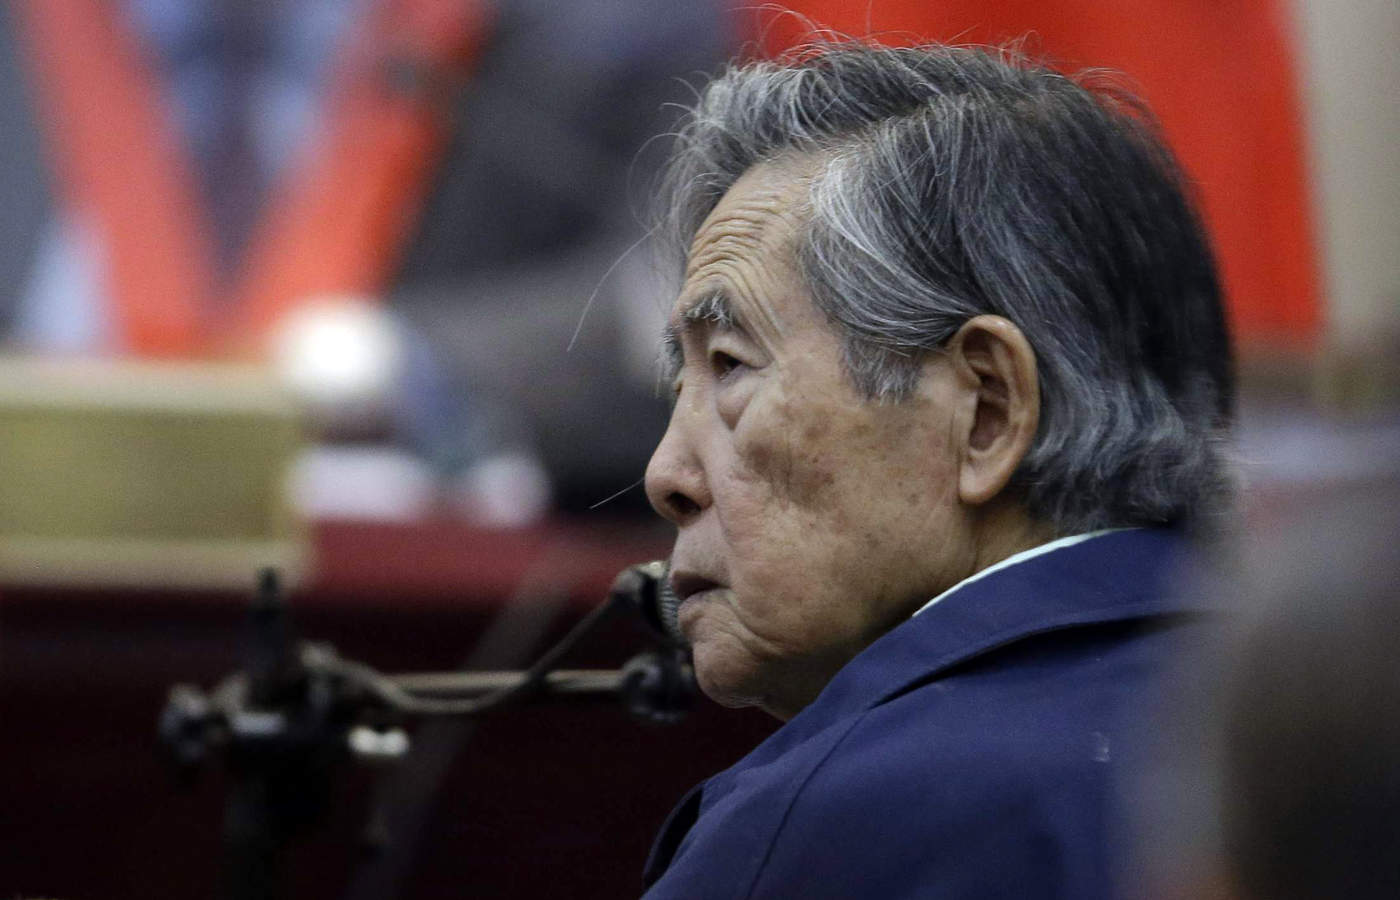 El anuncio se realiza por un pedido expreso del juez supremo Jorge Salas, quien ordenó el viernes buscar una prisión donde se pueda monitorear la salud de Fujimori, de 80 años, afectada por dolencias cardiacas y presión alta. (ARCHIVO)